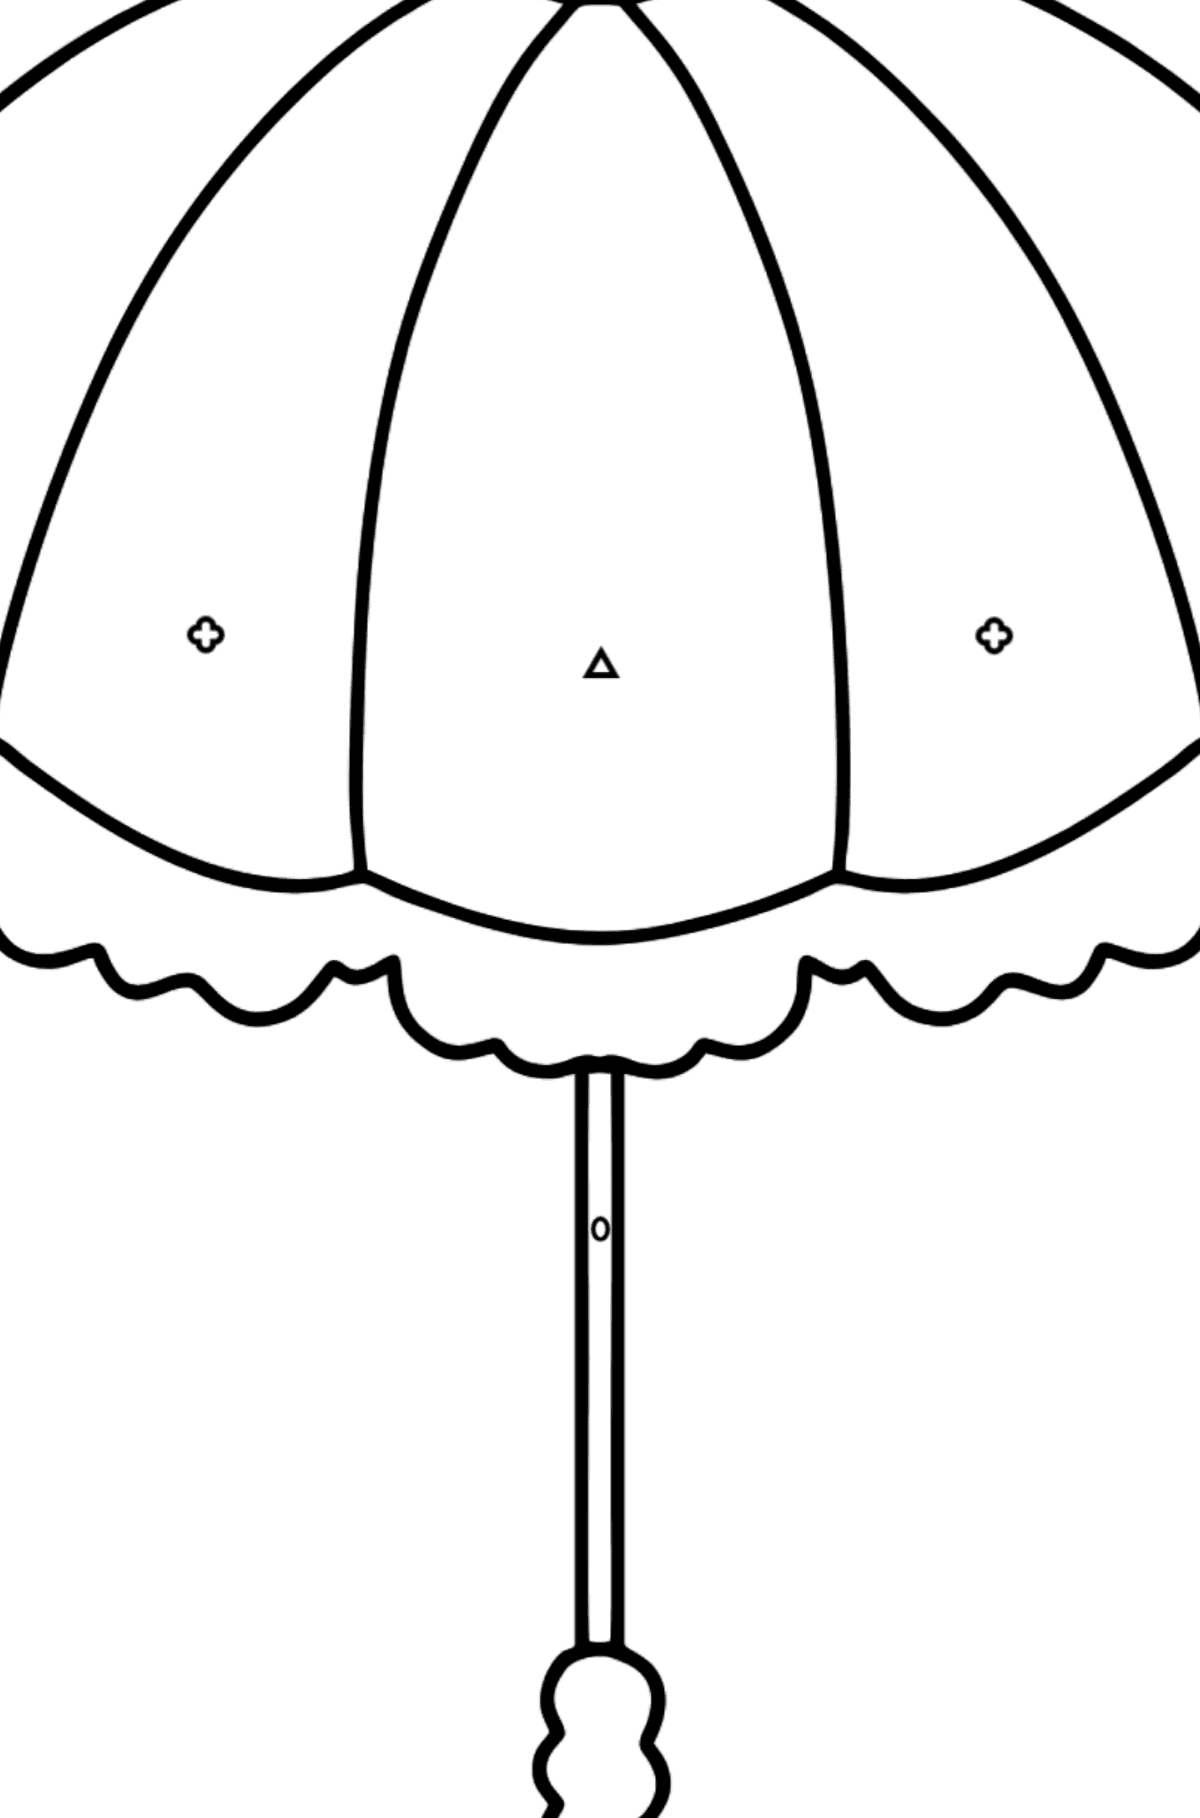 Kleurplaat paraplu (makkelijk) - Kleuren met geometrische figuren voor kinderen